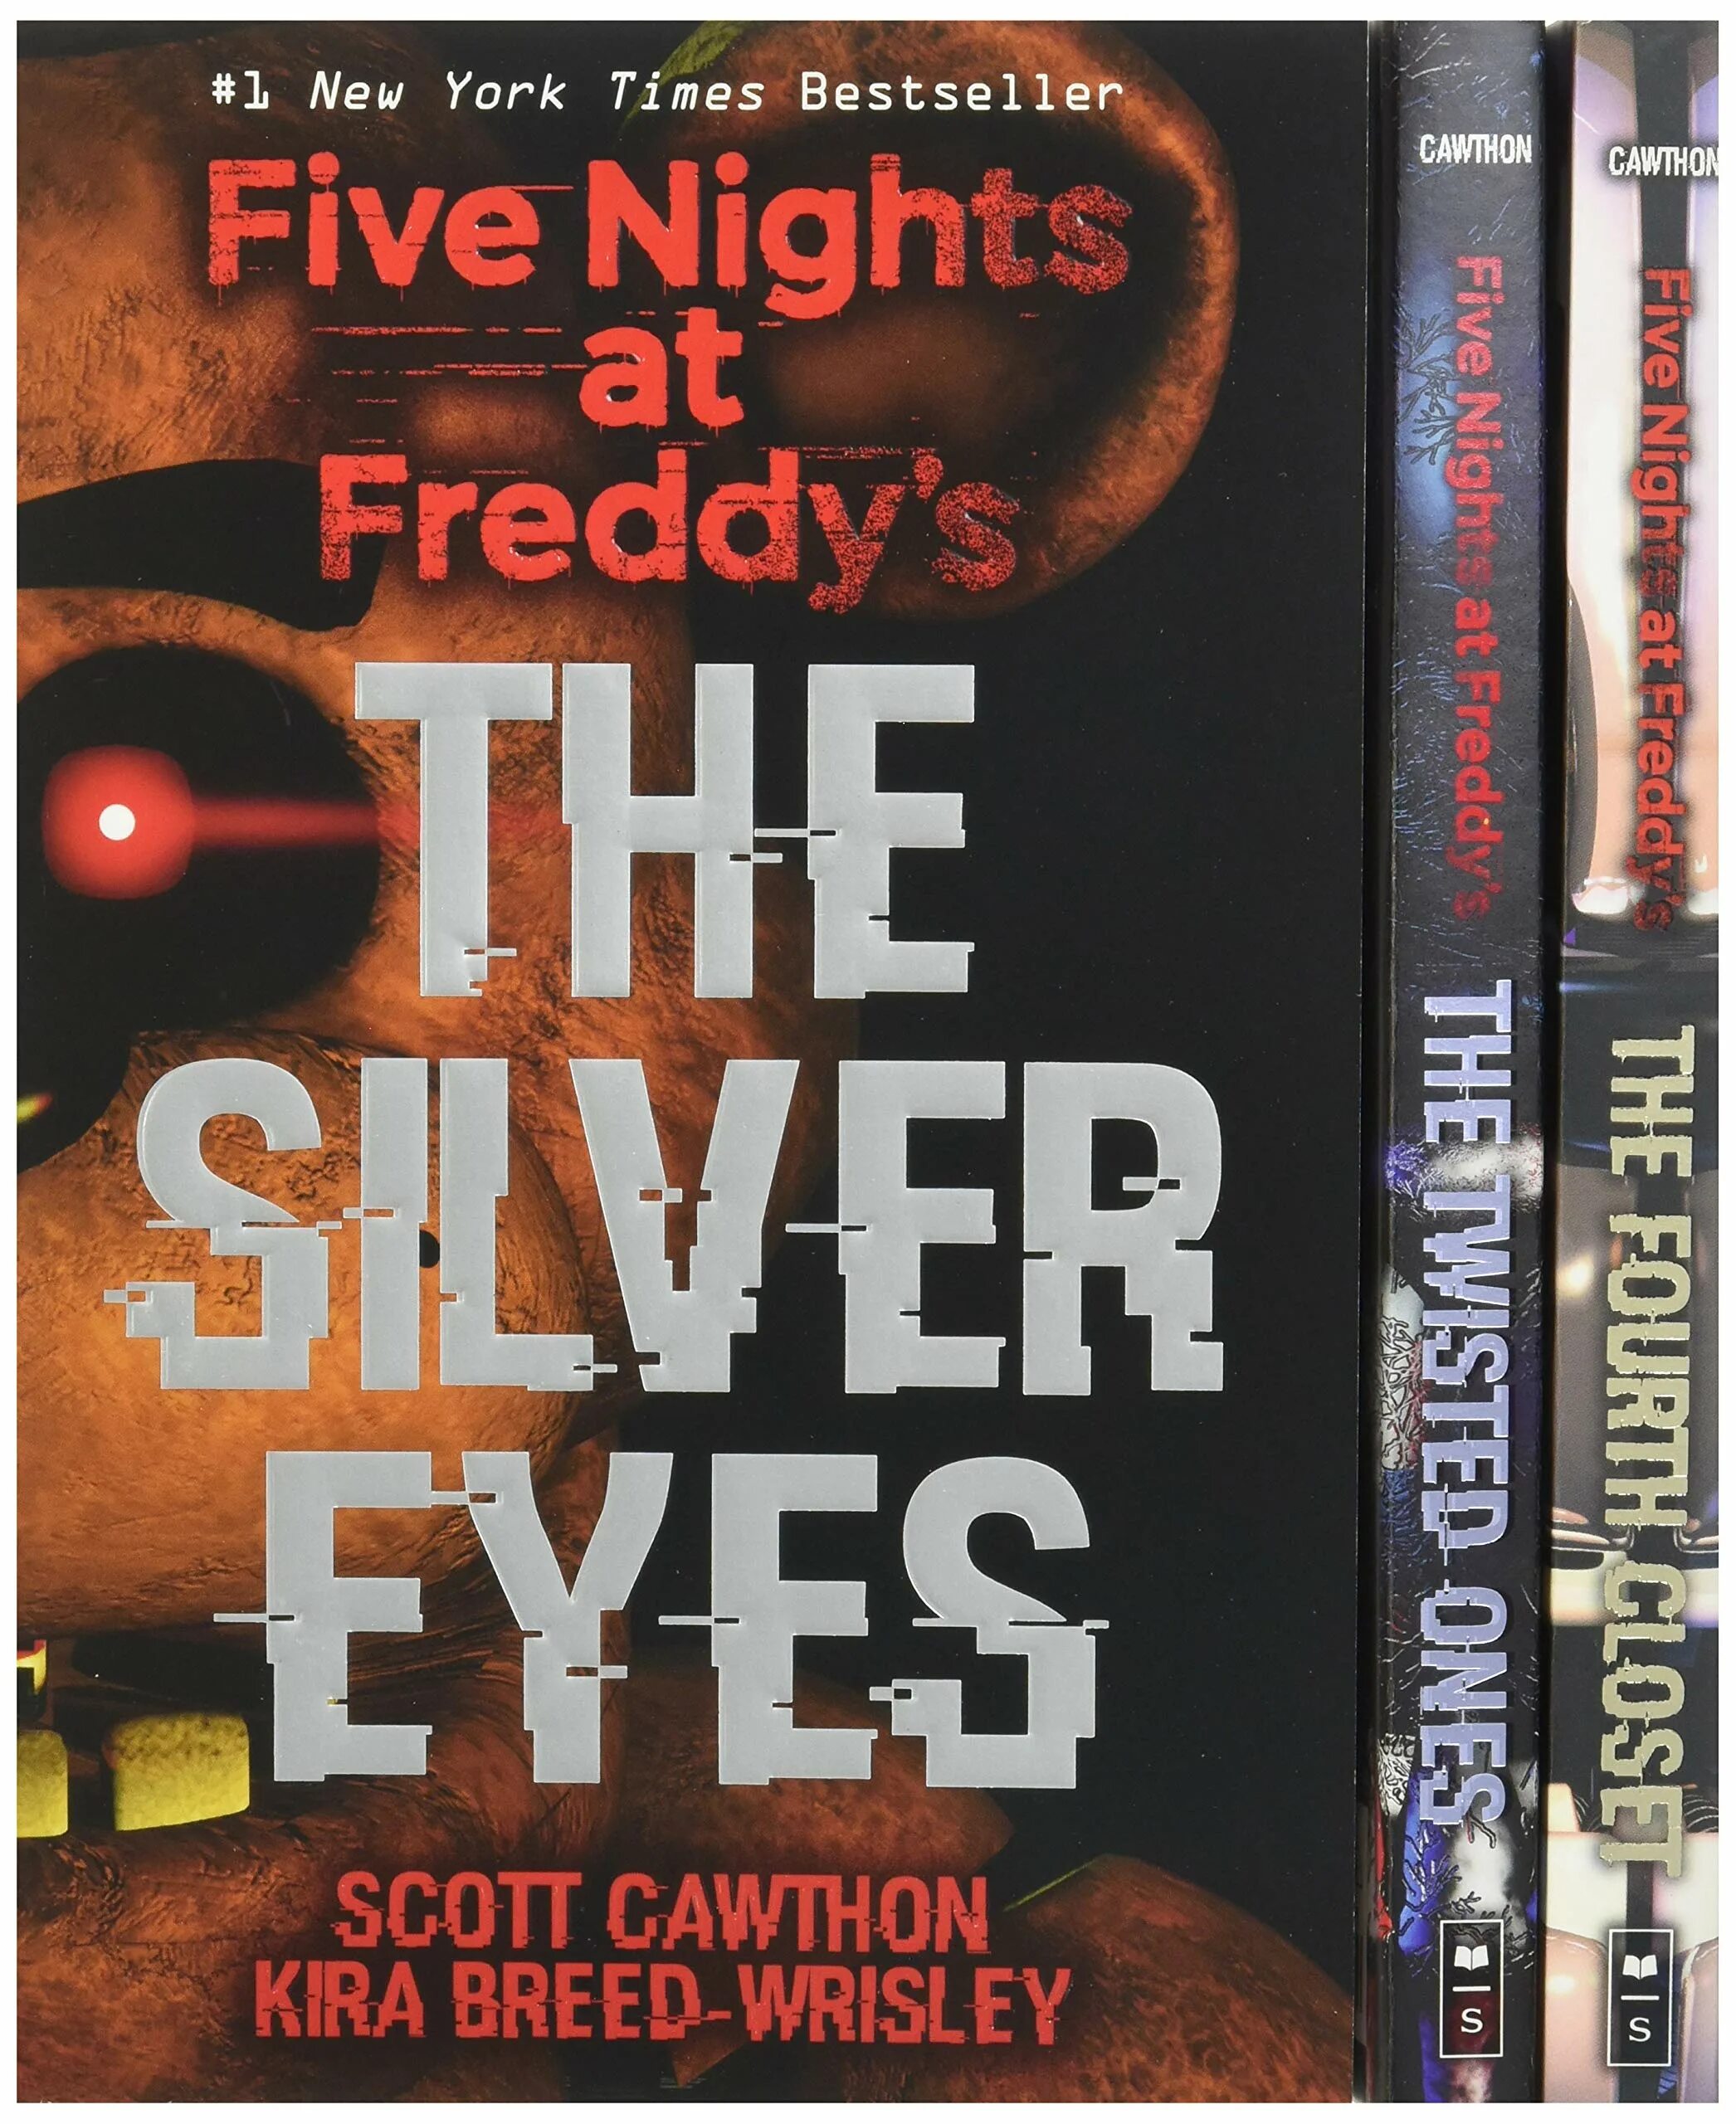 Серебряные глаза Скотт Коутон. Серебряные глаза книга Скотт Коутон. Five Nights at Freddy’s: the Silver Eyes Скотт Коутон книга. Five Nights at Freddy’s: the Silver Eyes книга. Скотт коутон книги